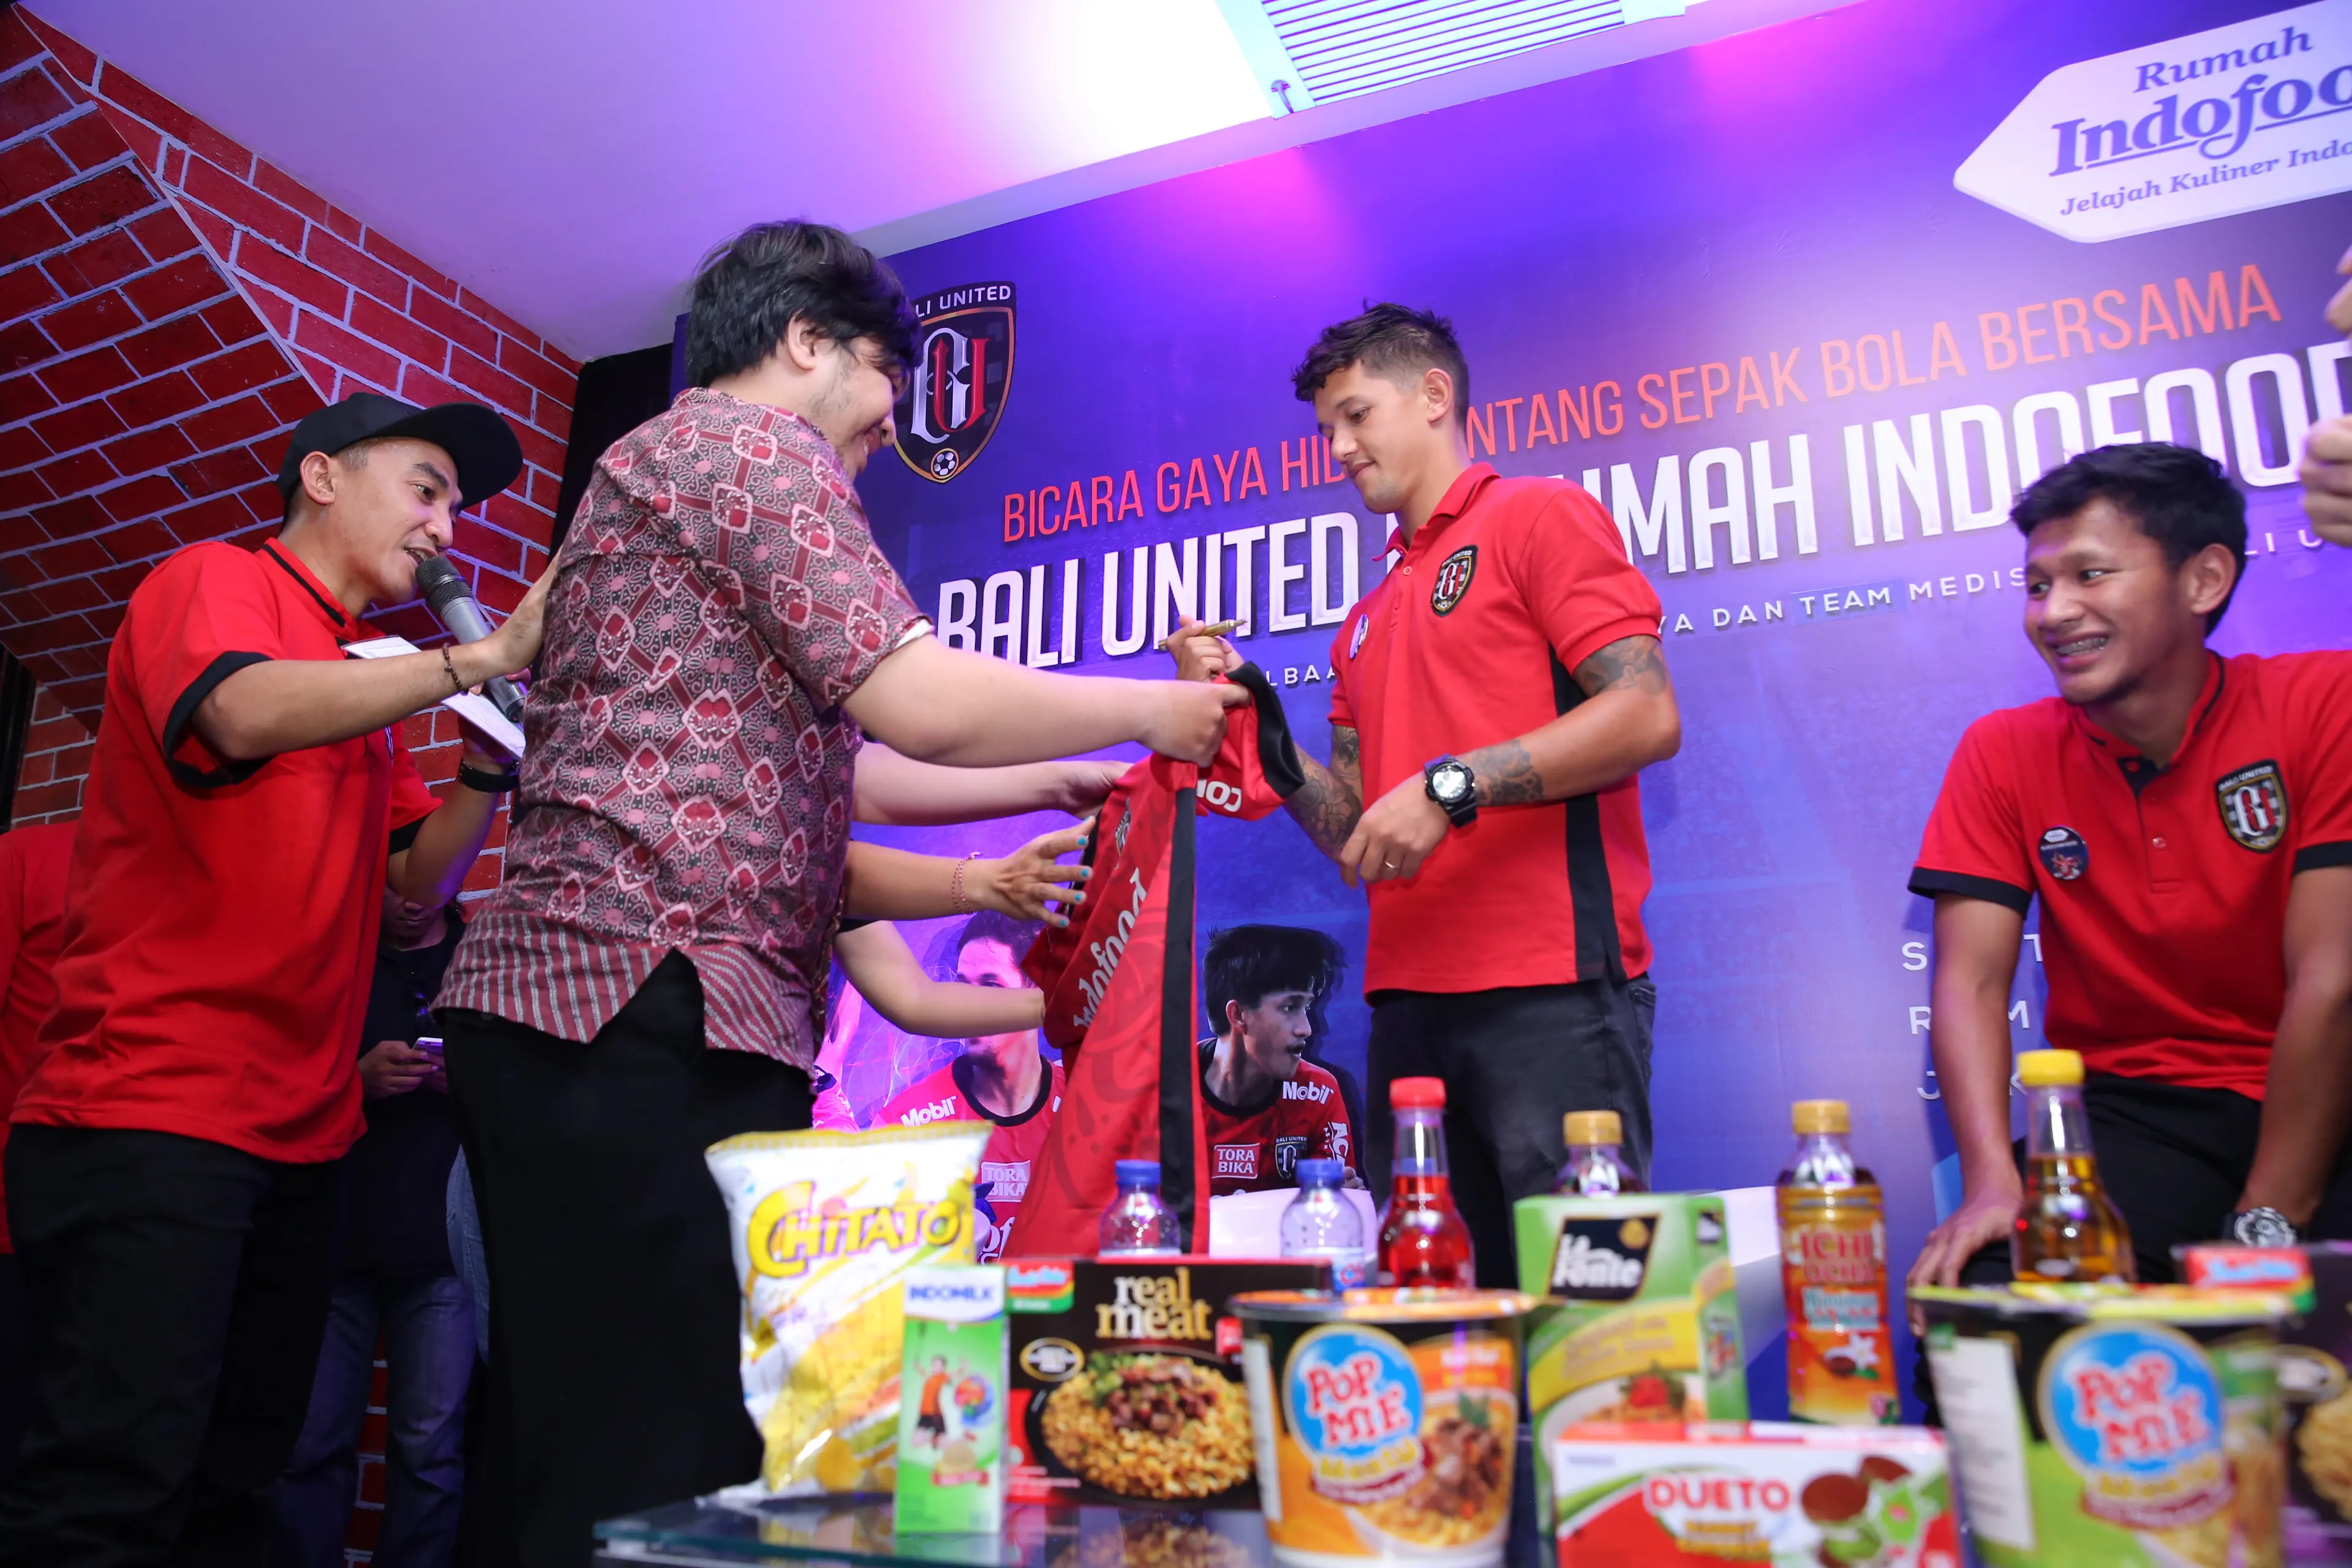 Tiga Bintang Bali United Meet and Greet di Rumah Indofood. (Foto: Istimewa)